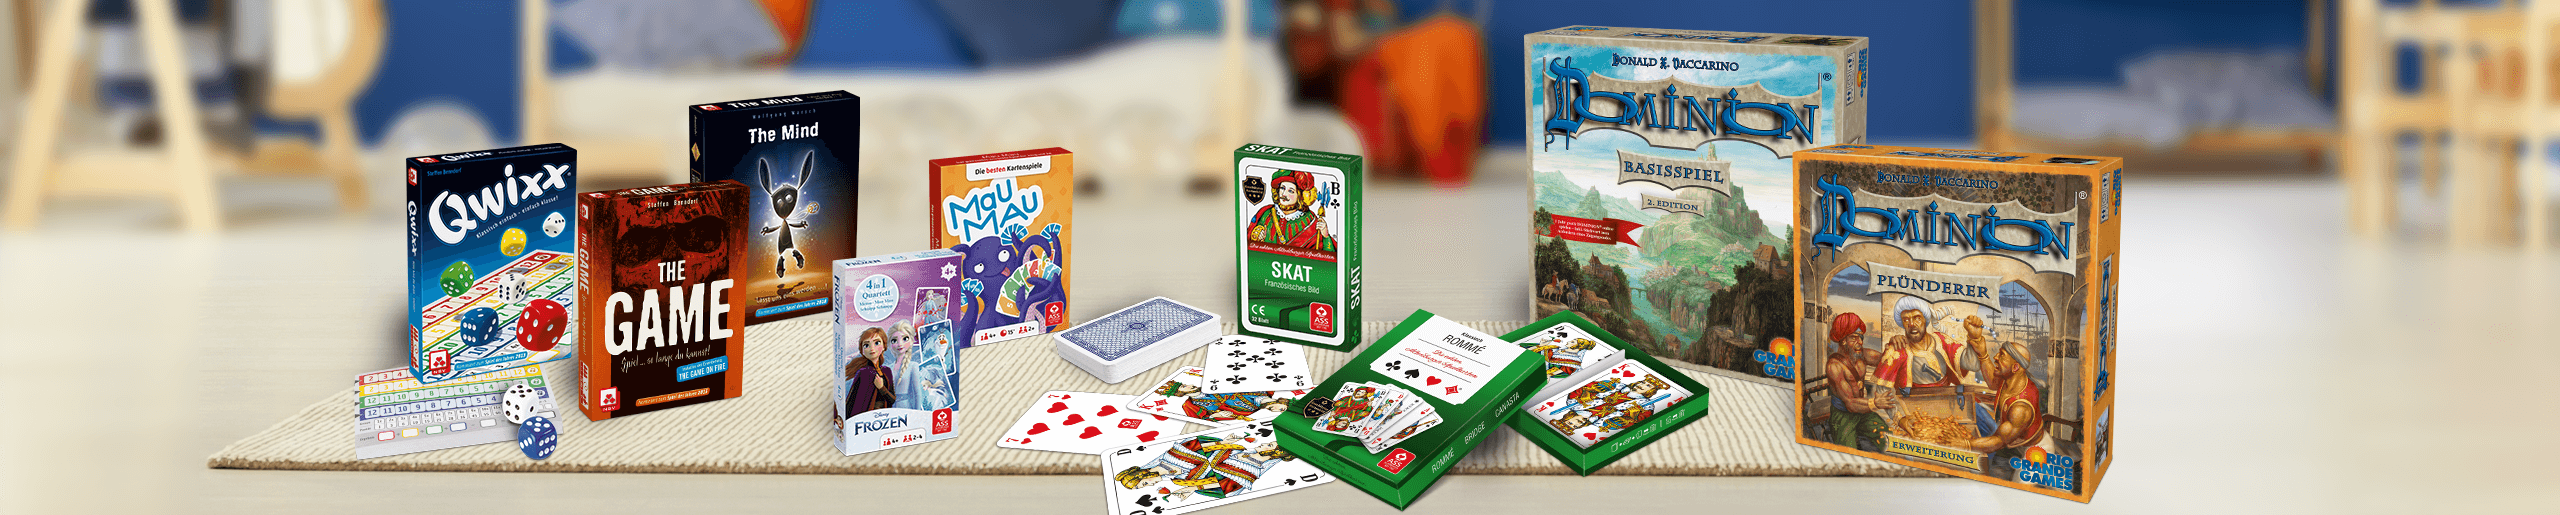 Headerbild Familienhelden Fachhandelsprogramm mit beliebten Spielen von allen Marken